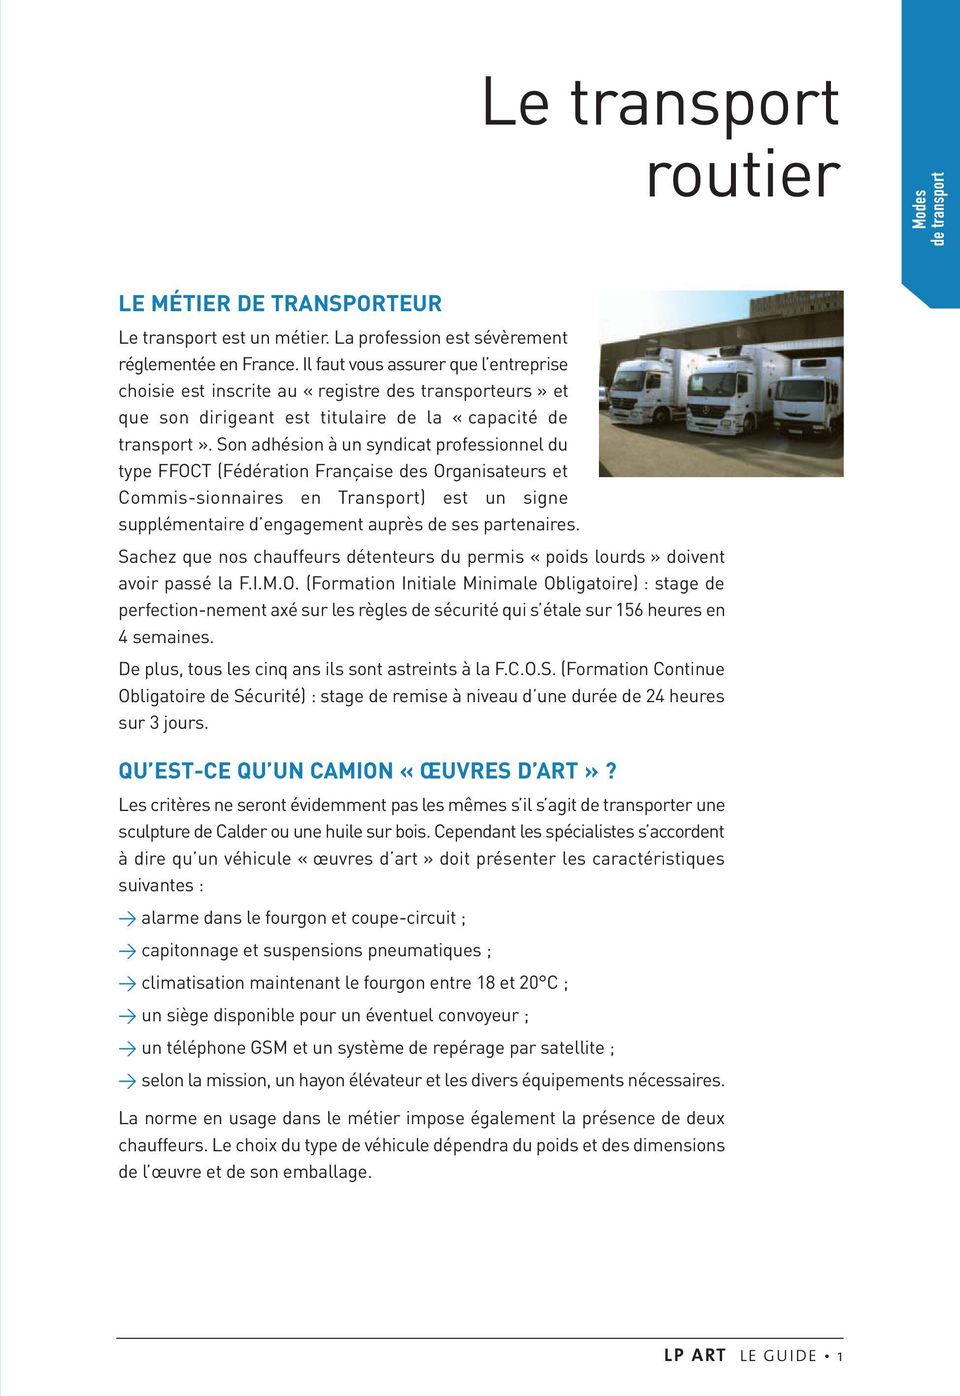 Son adhésion à un syndicat professionnel du type FFOCT (Fédération Française des Organisateurs et Commis-sionnaires en Transport) est un signe supplémentaire d engagement auprès de ses partenaires.